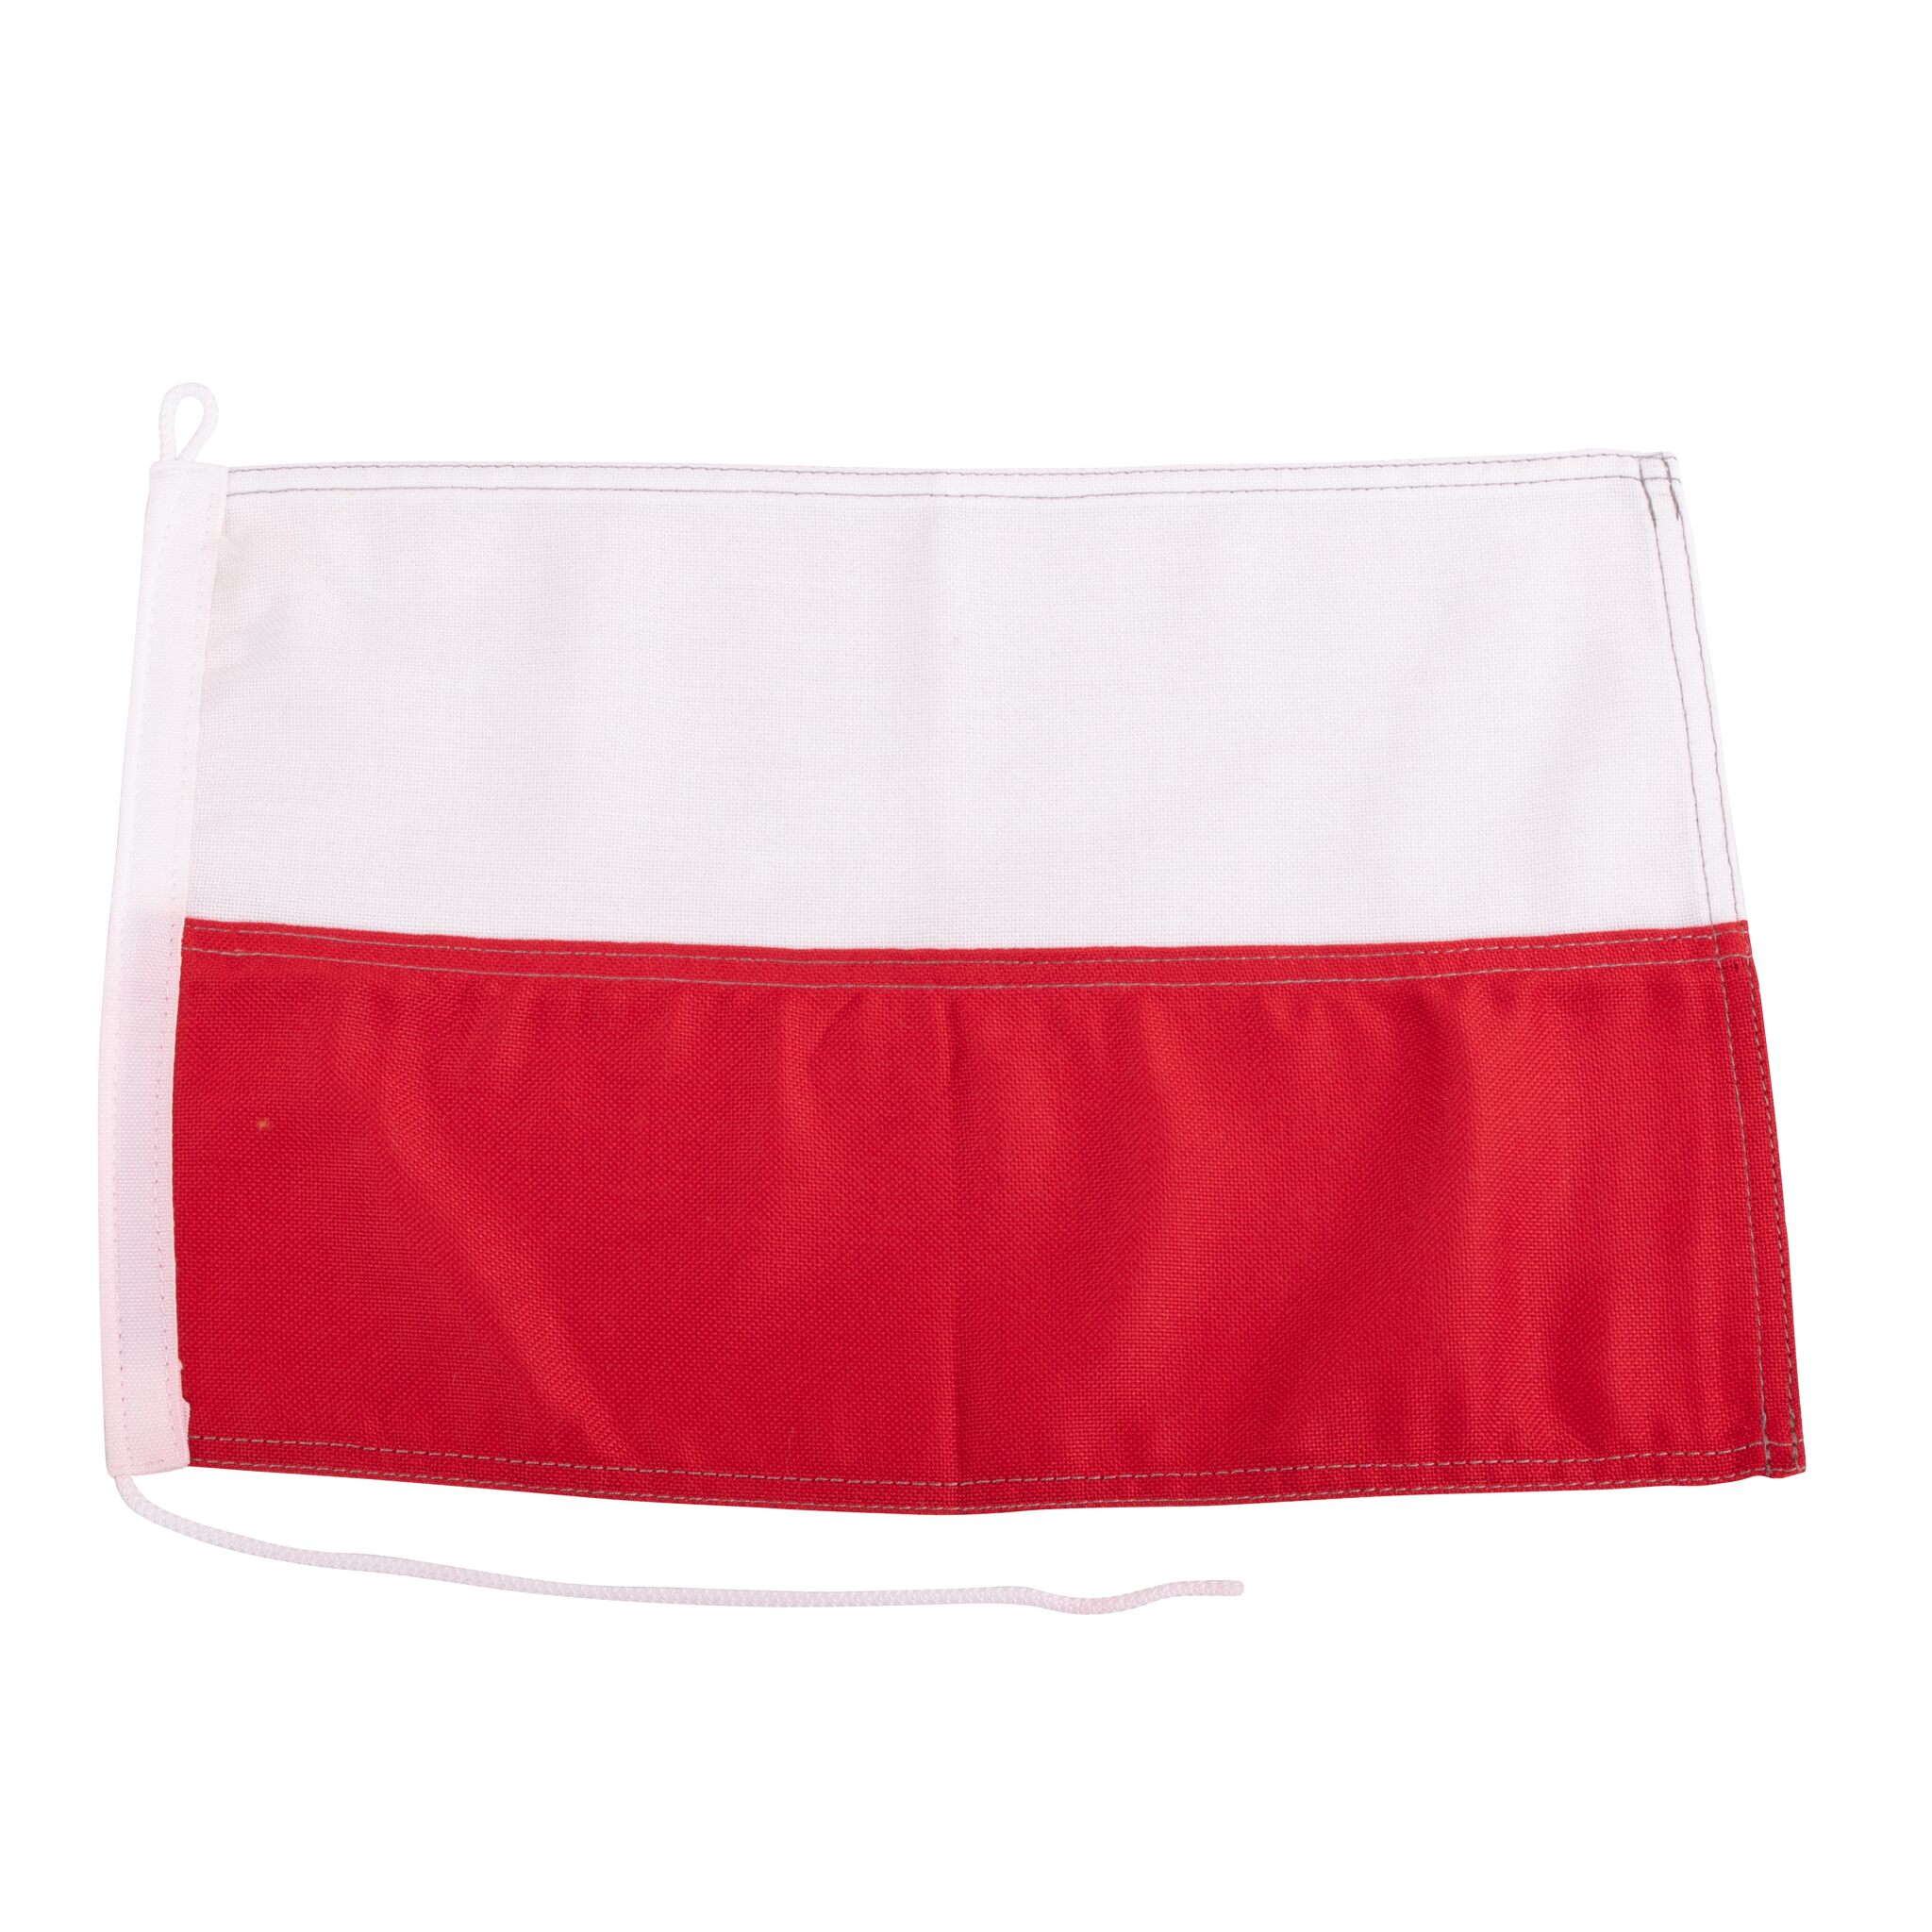 Gastlandflagge Polen